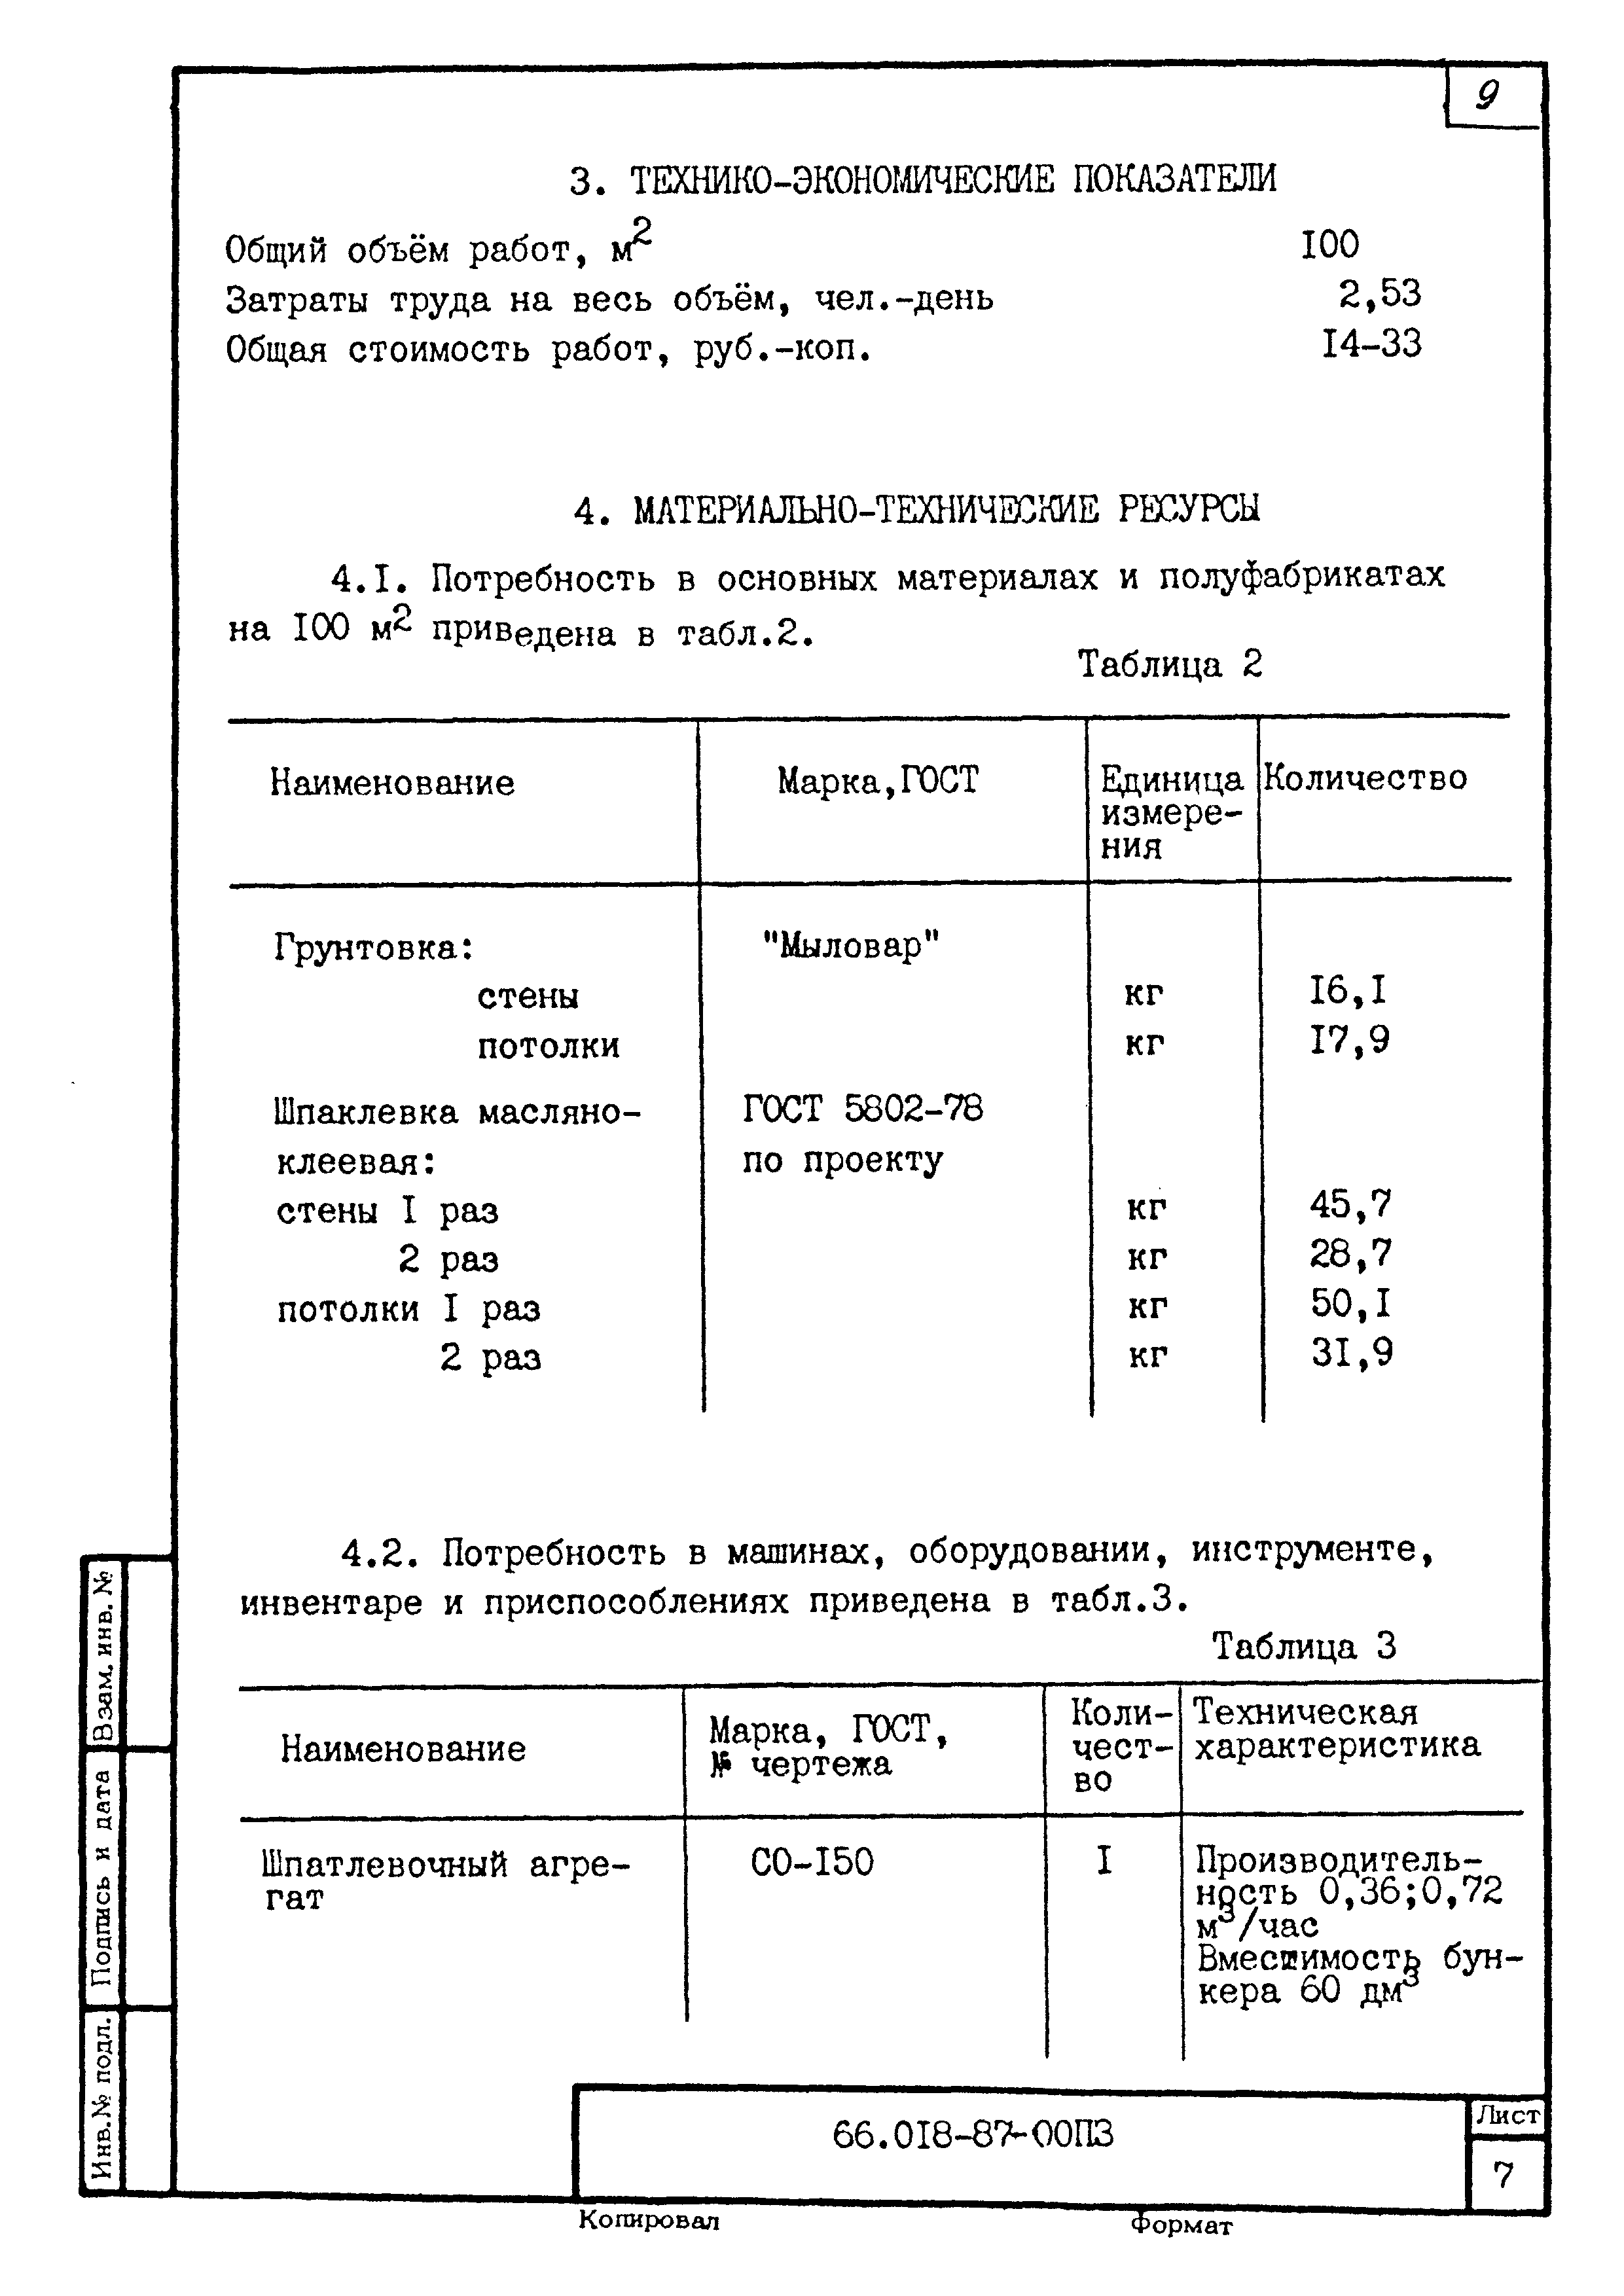 ТК 66.018-87